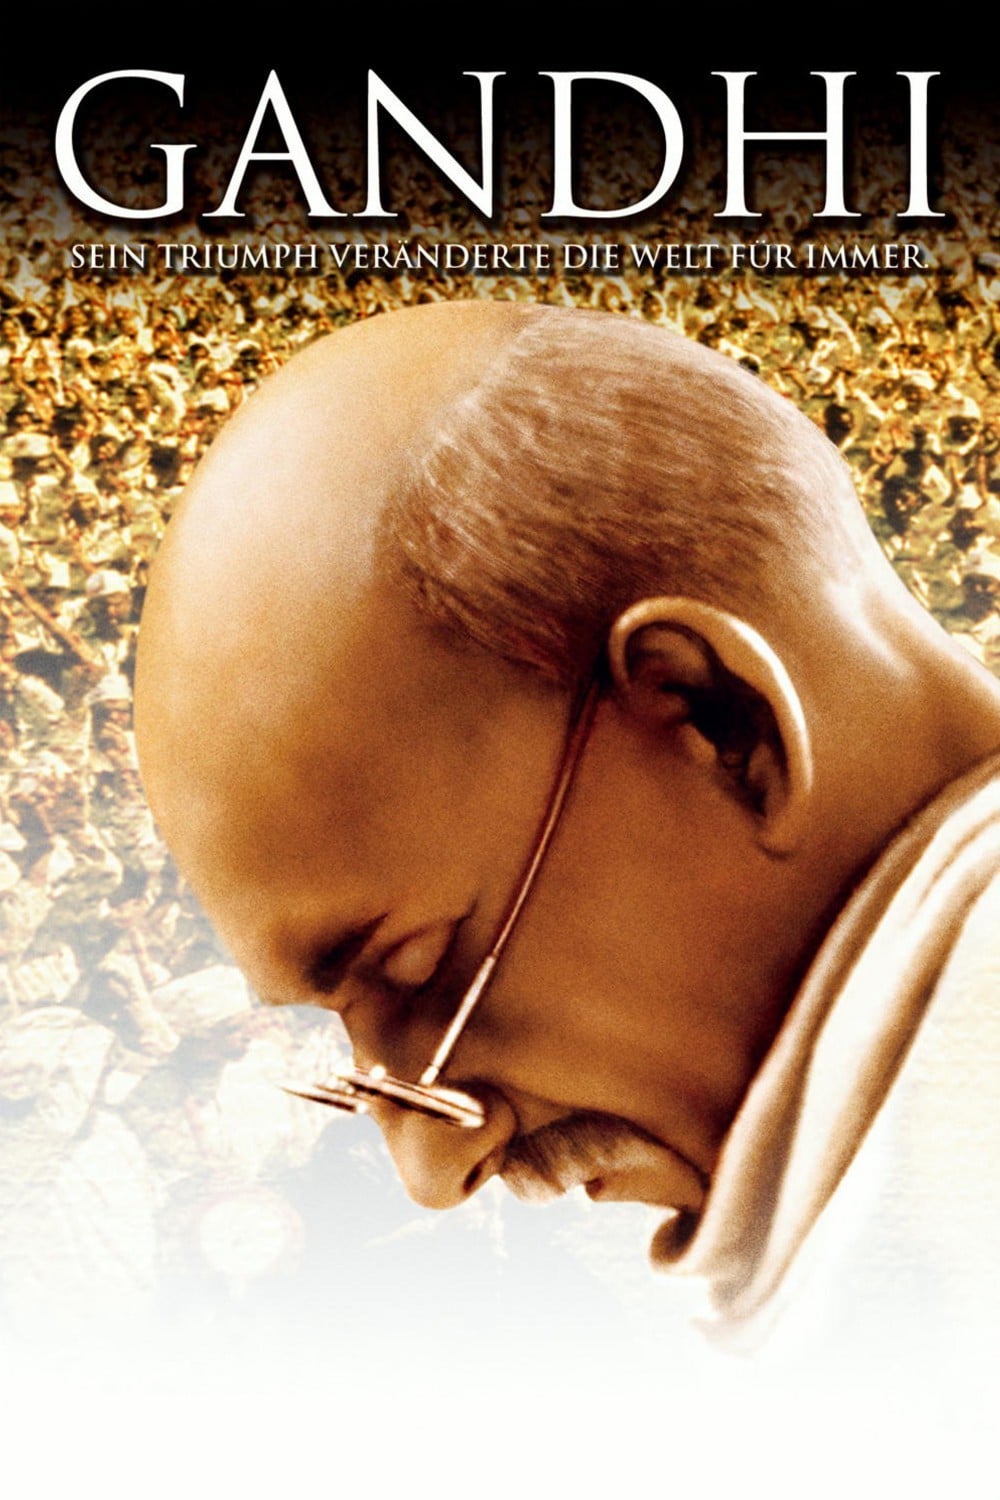 Plakat von "Gandhi"